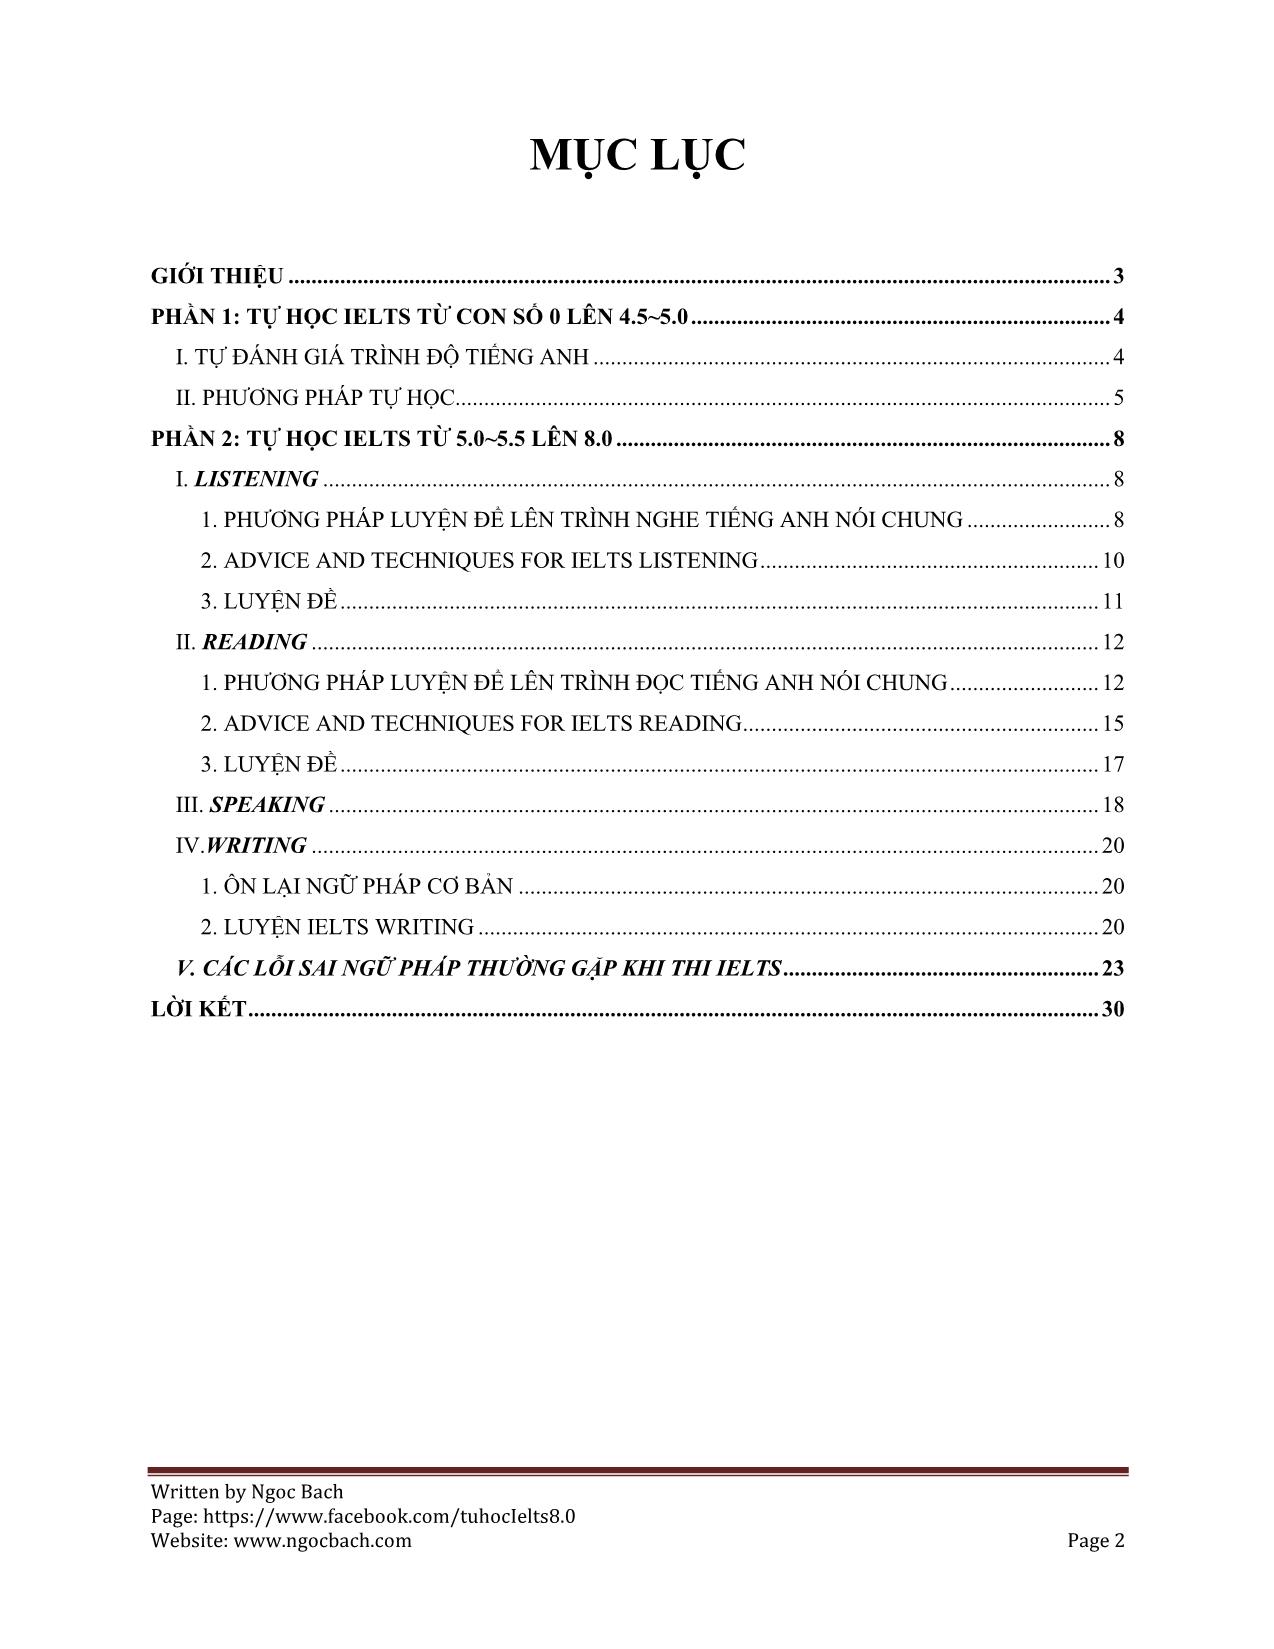 Bí kíp tự học Ielts từ con số 0 lên 8.0 - 2015 by ngoc bach trang 2